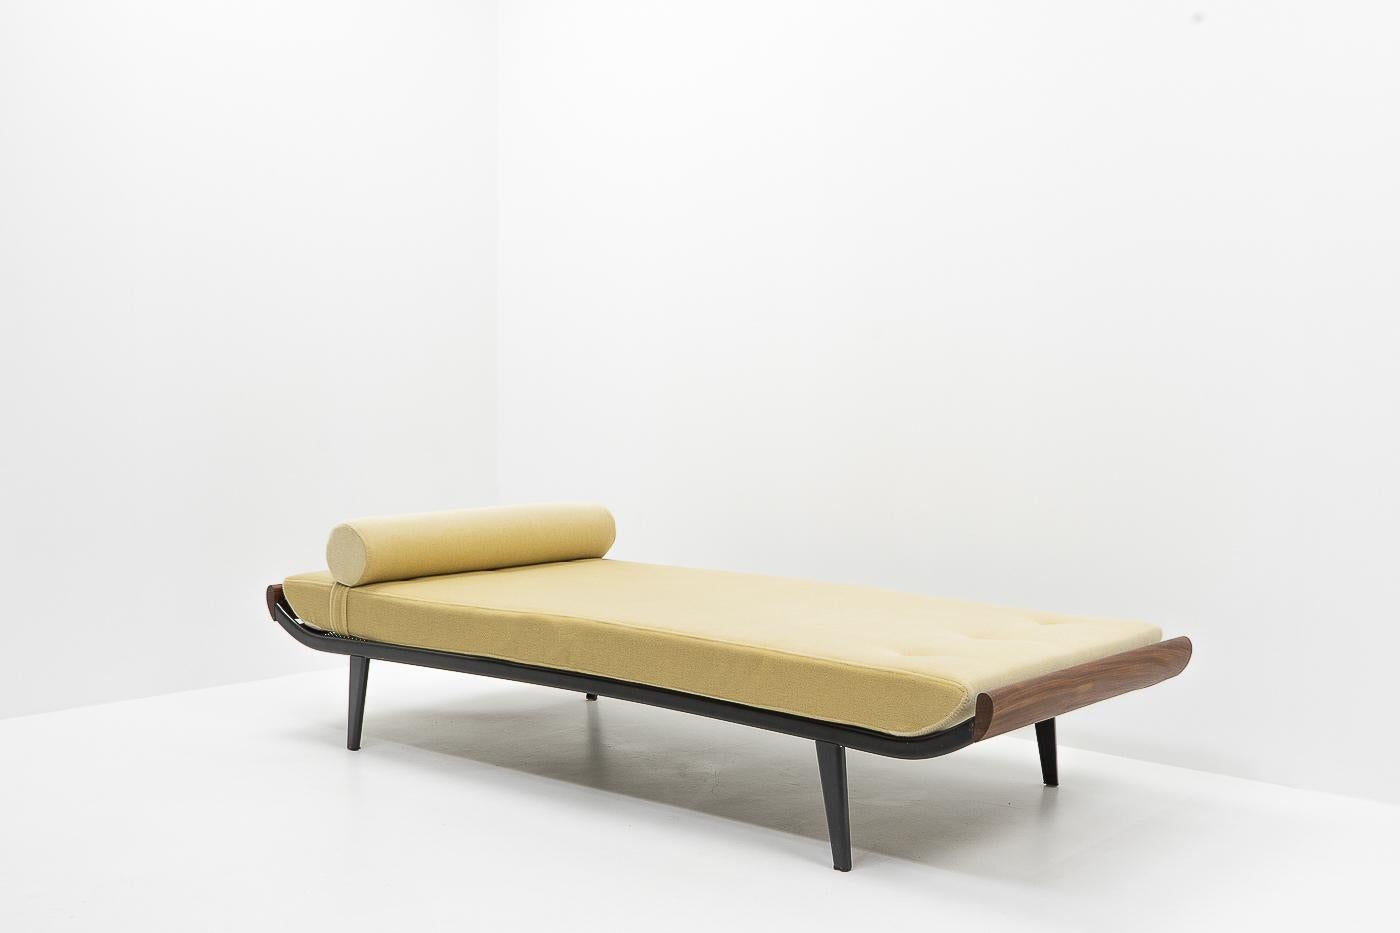 Vintage Daybed, entworfen von Dick Cordemeijer für Auping (Niederlande) in den 1950er Jahren.

Neues exklusives beigefarbenes Naturmohair und Schaumstoff; das Daybed kann sowohl als Sofa als auch als Zusatzbett verwendet werden. Der Bezug ist mit